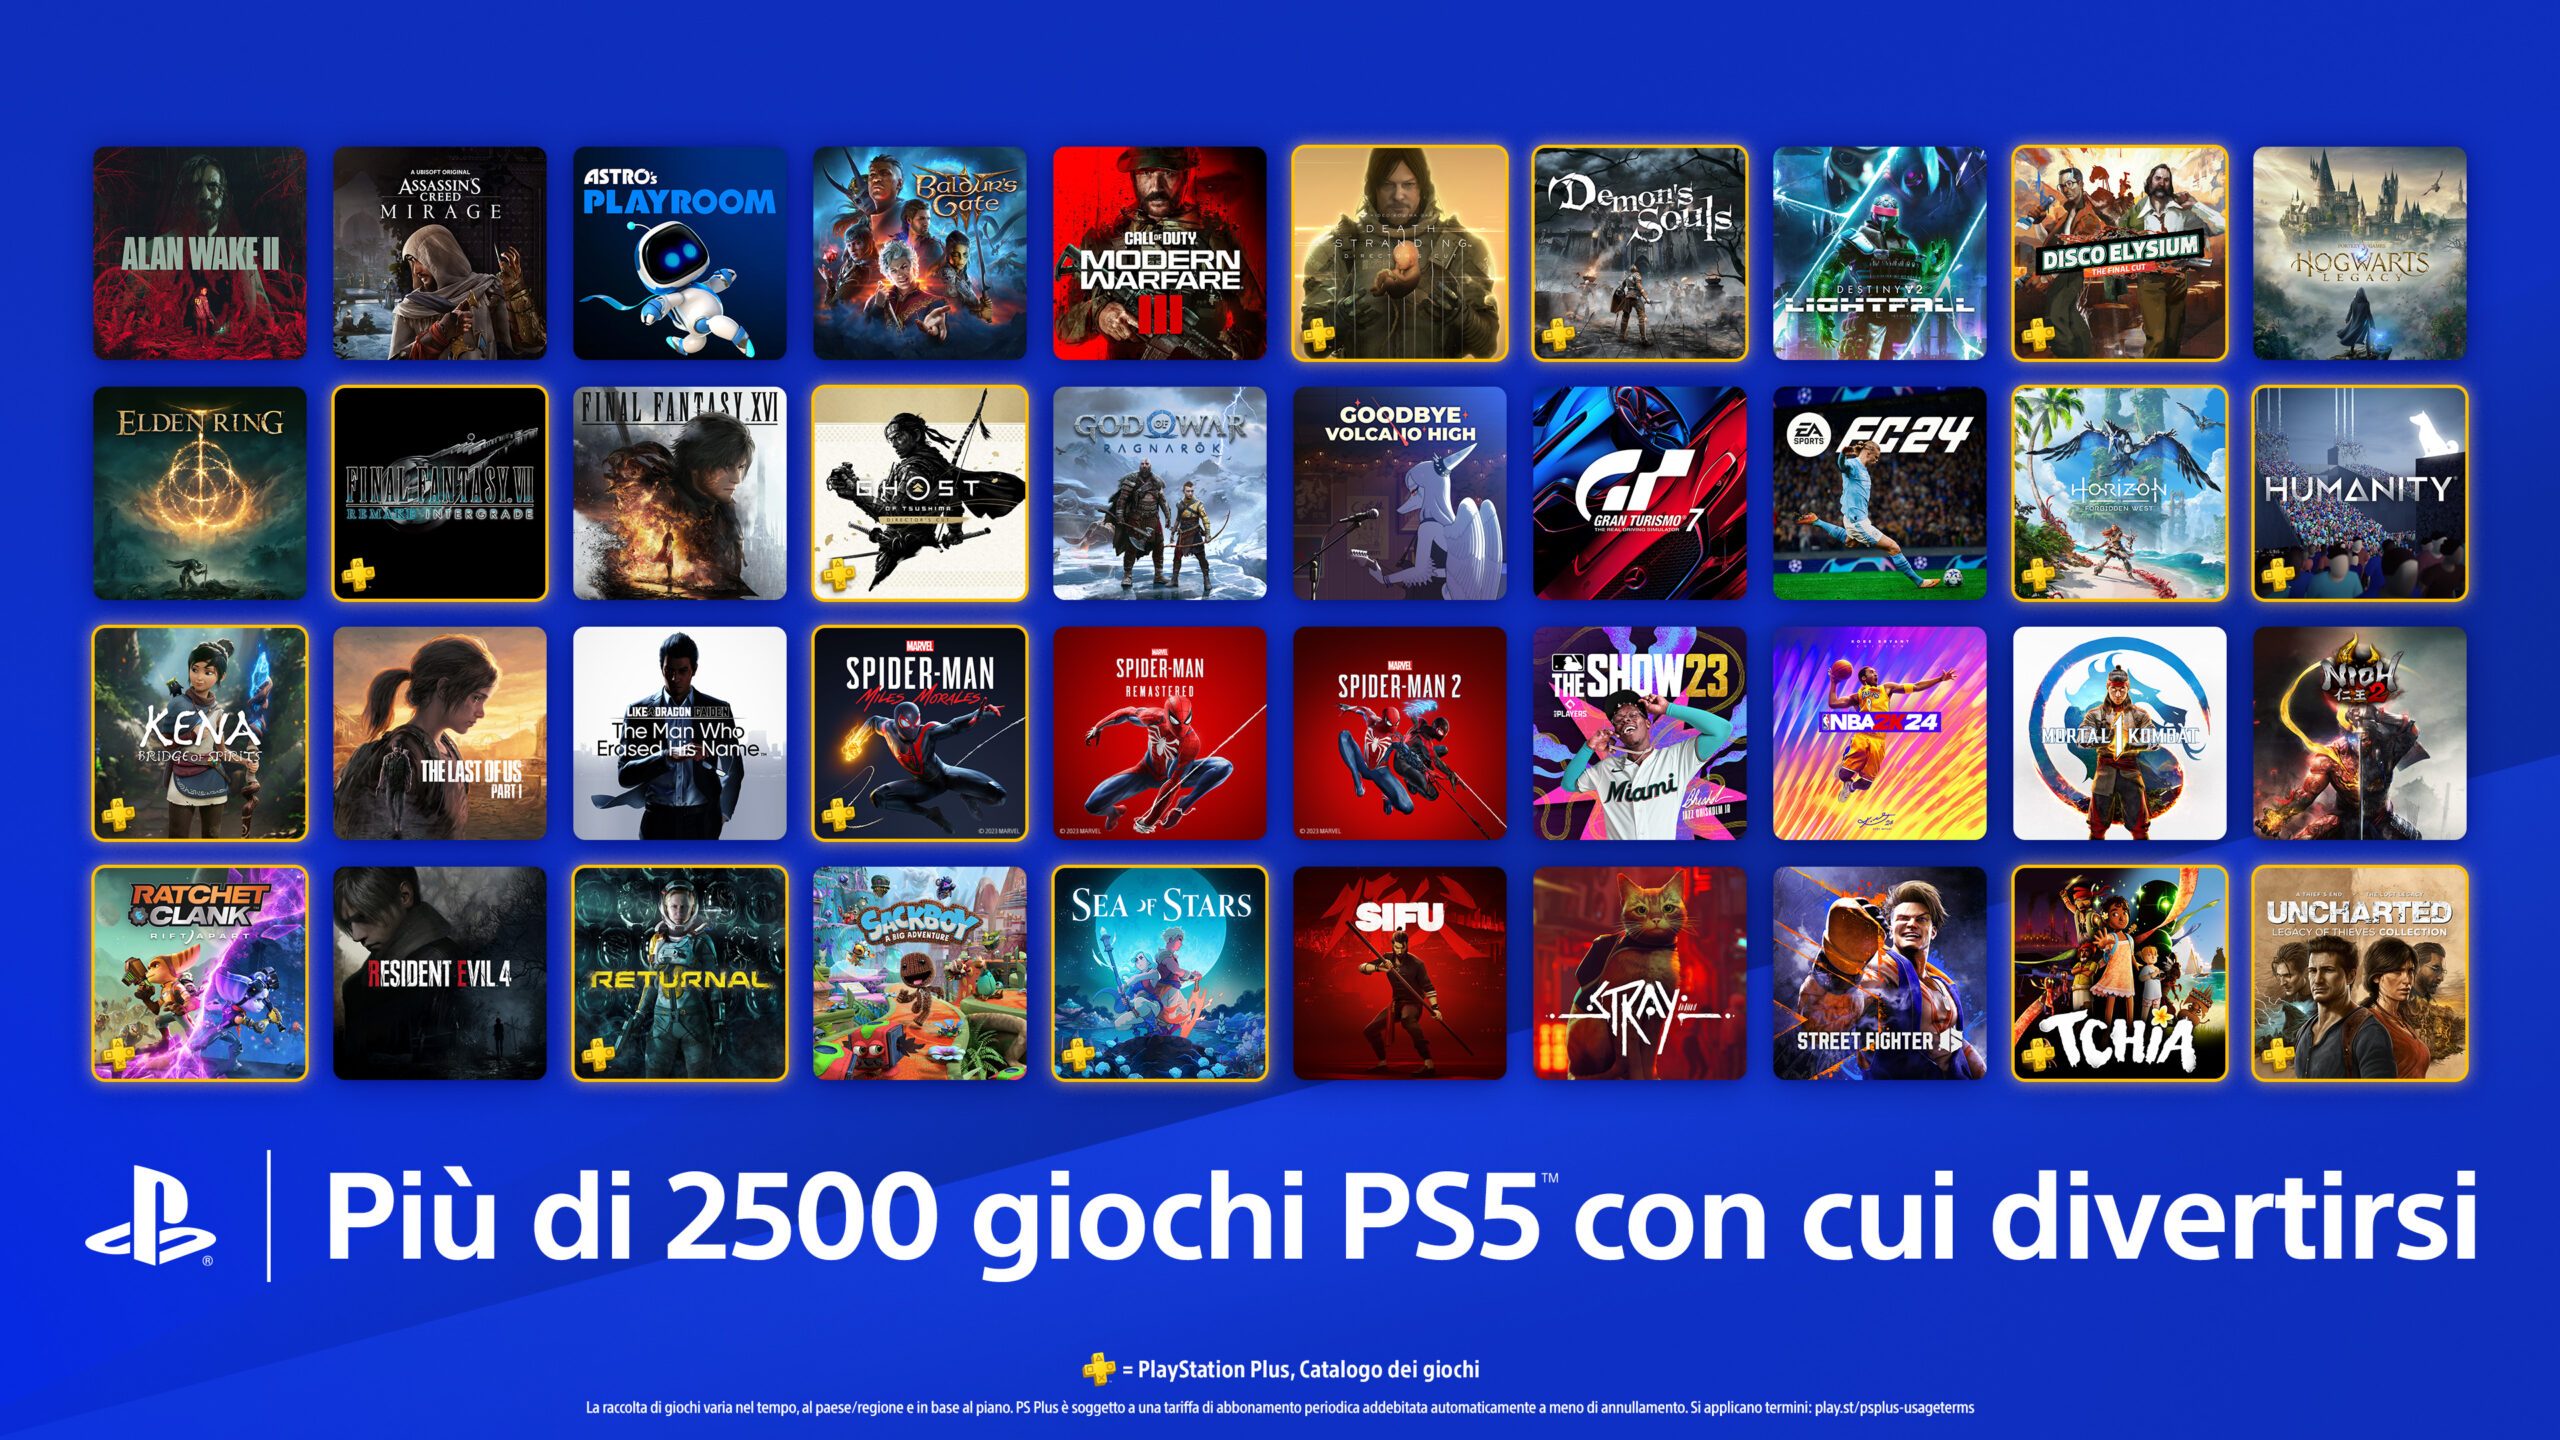 Festeggiamo la stagione natalizia con grandi titoli, nuovi prodotti  hardware e ancora più console PS5 che mai – Il Blog Italiano di PlayStation